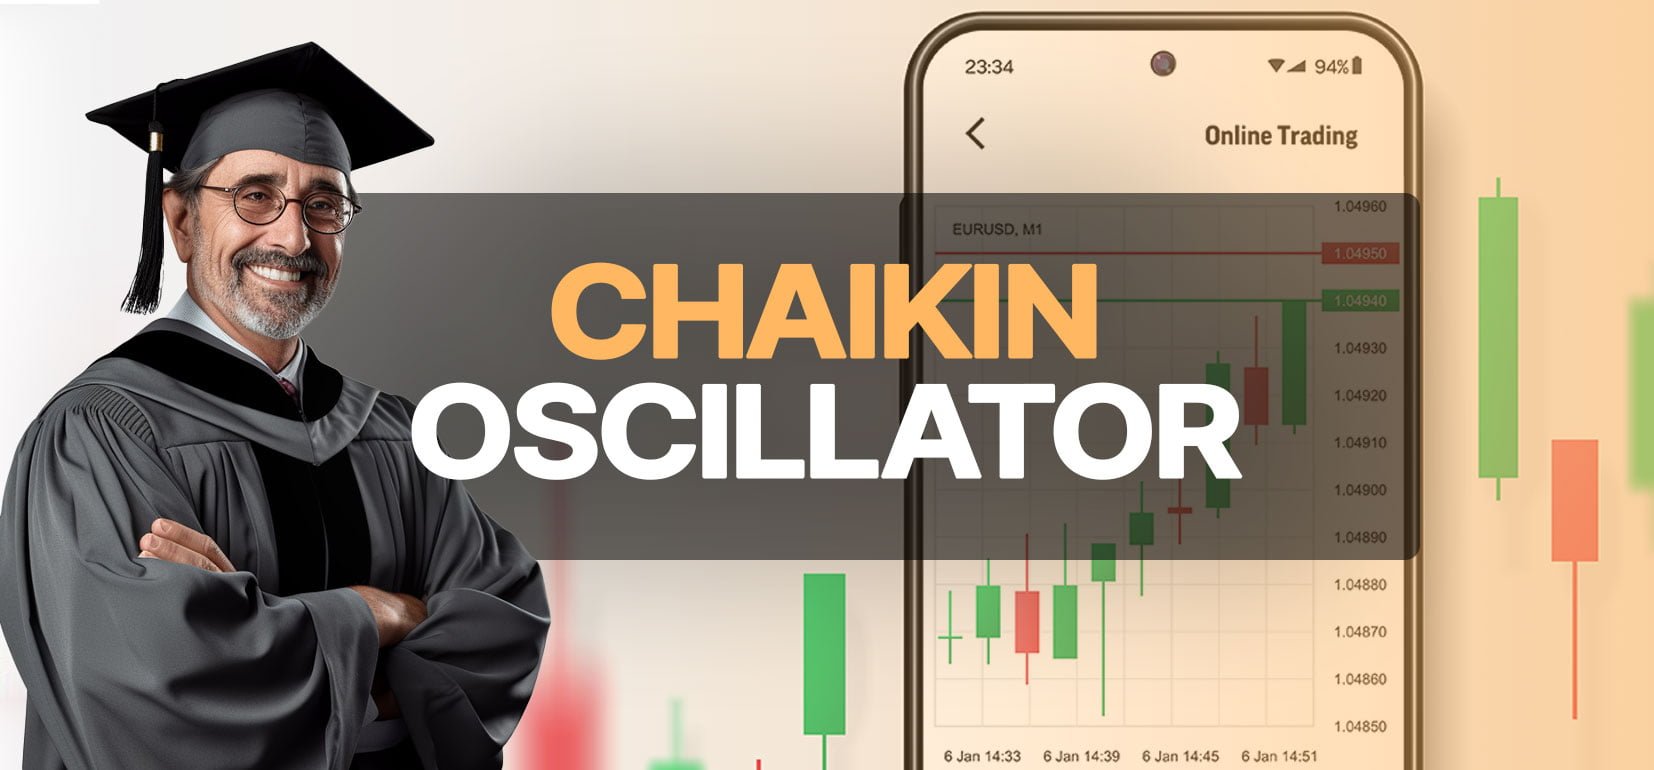 Comment utiliser l'oscillateur Chaikin avec succès